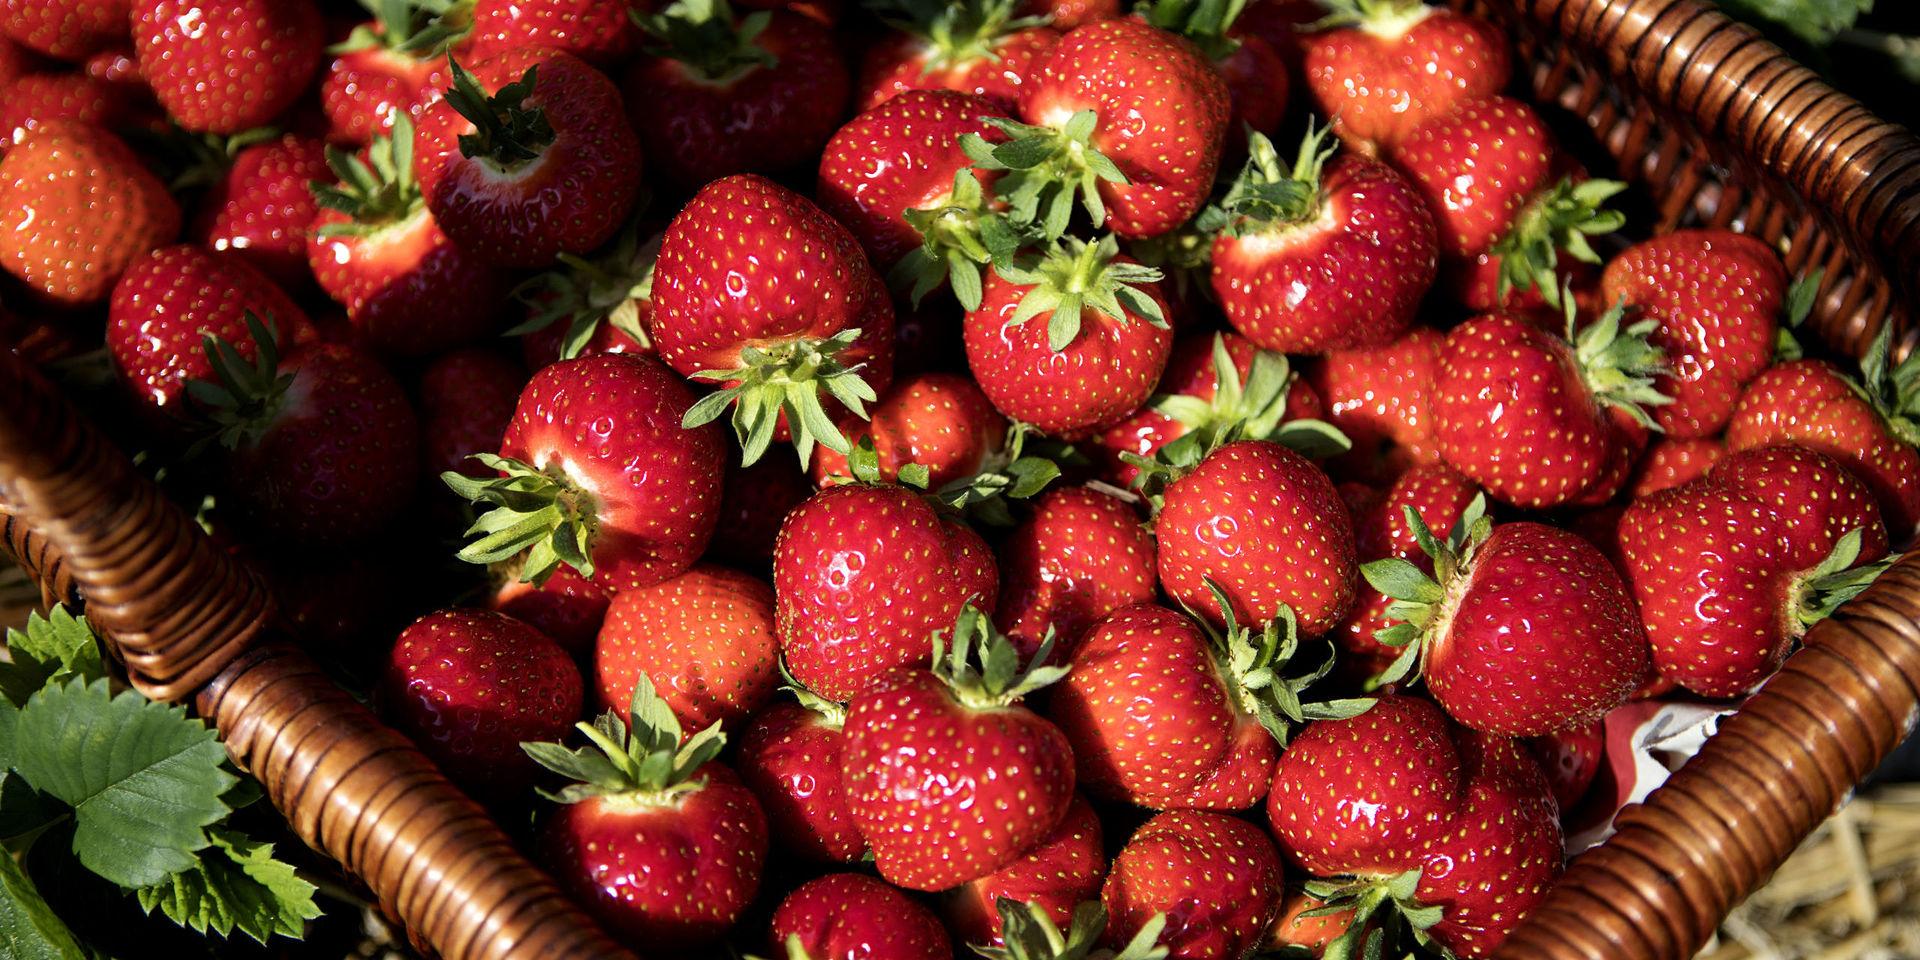 Om vädret tillåter kan årets första halländska jordgubbar plockas redan denna veckan.